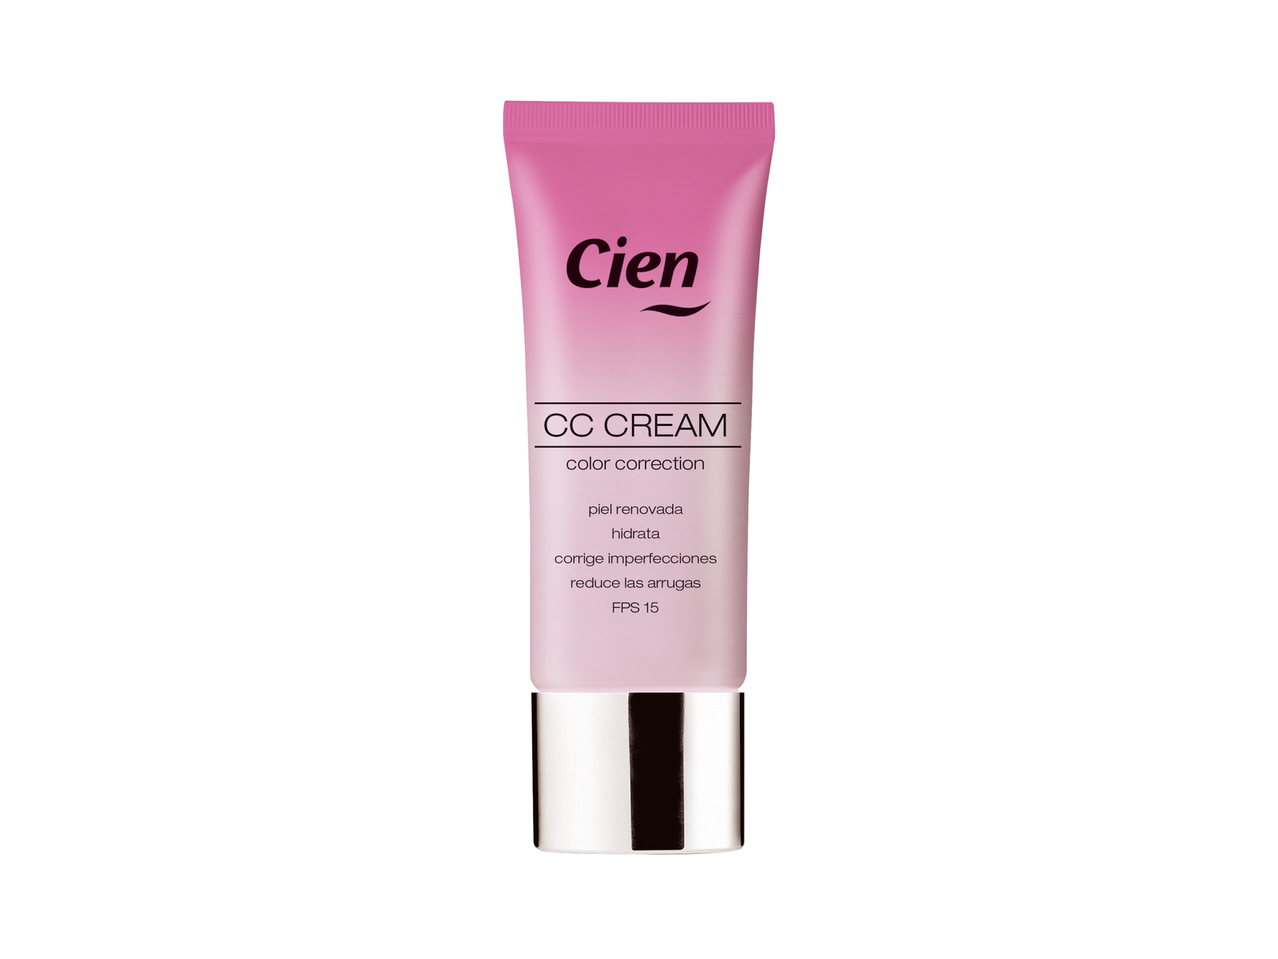 "CIEN" CC cream